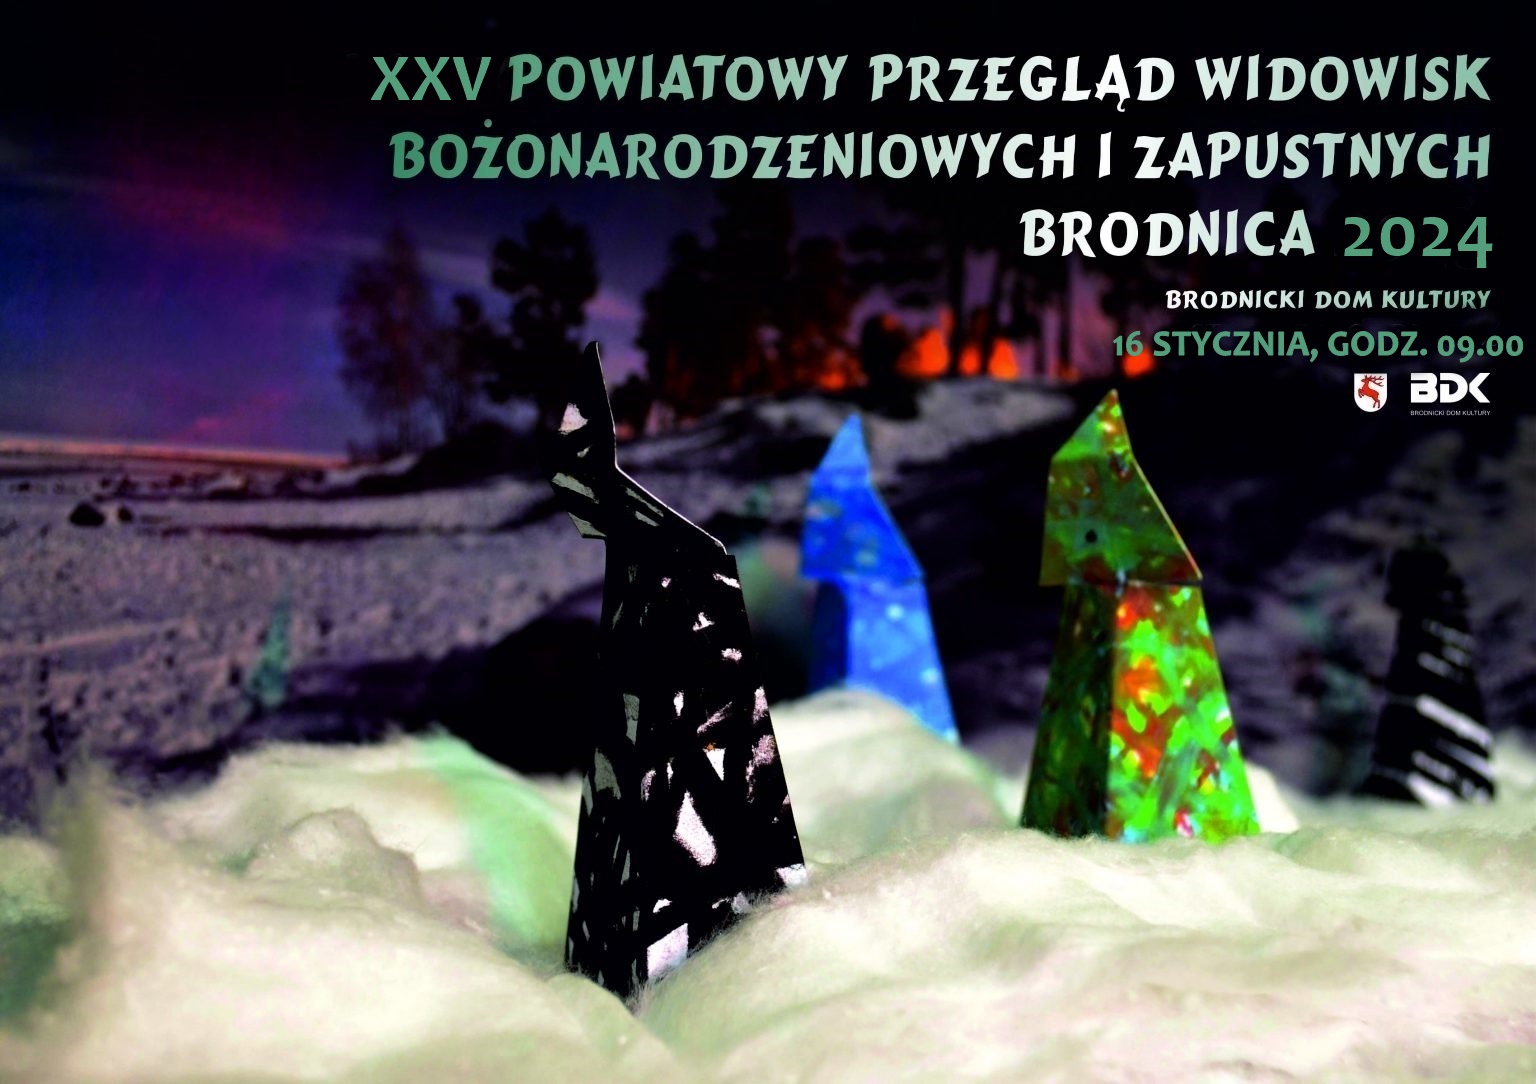 XXV Powiatowy Przegląd Widowisk Bożonarodzeniowych i Zapustnych Brodnica 2024